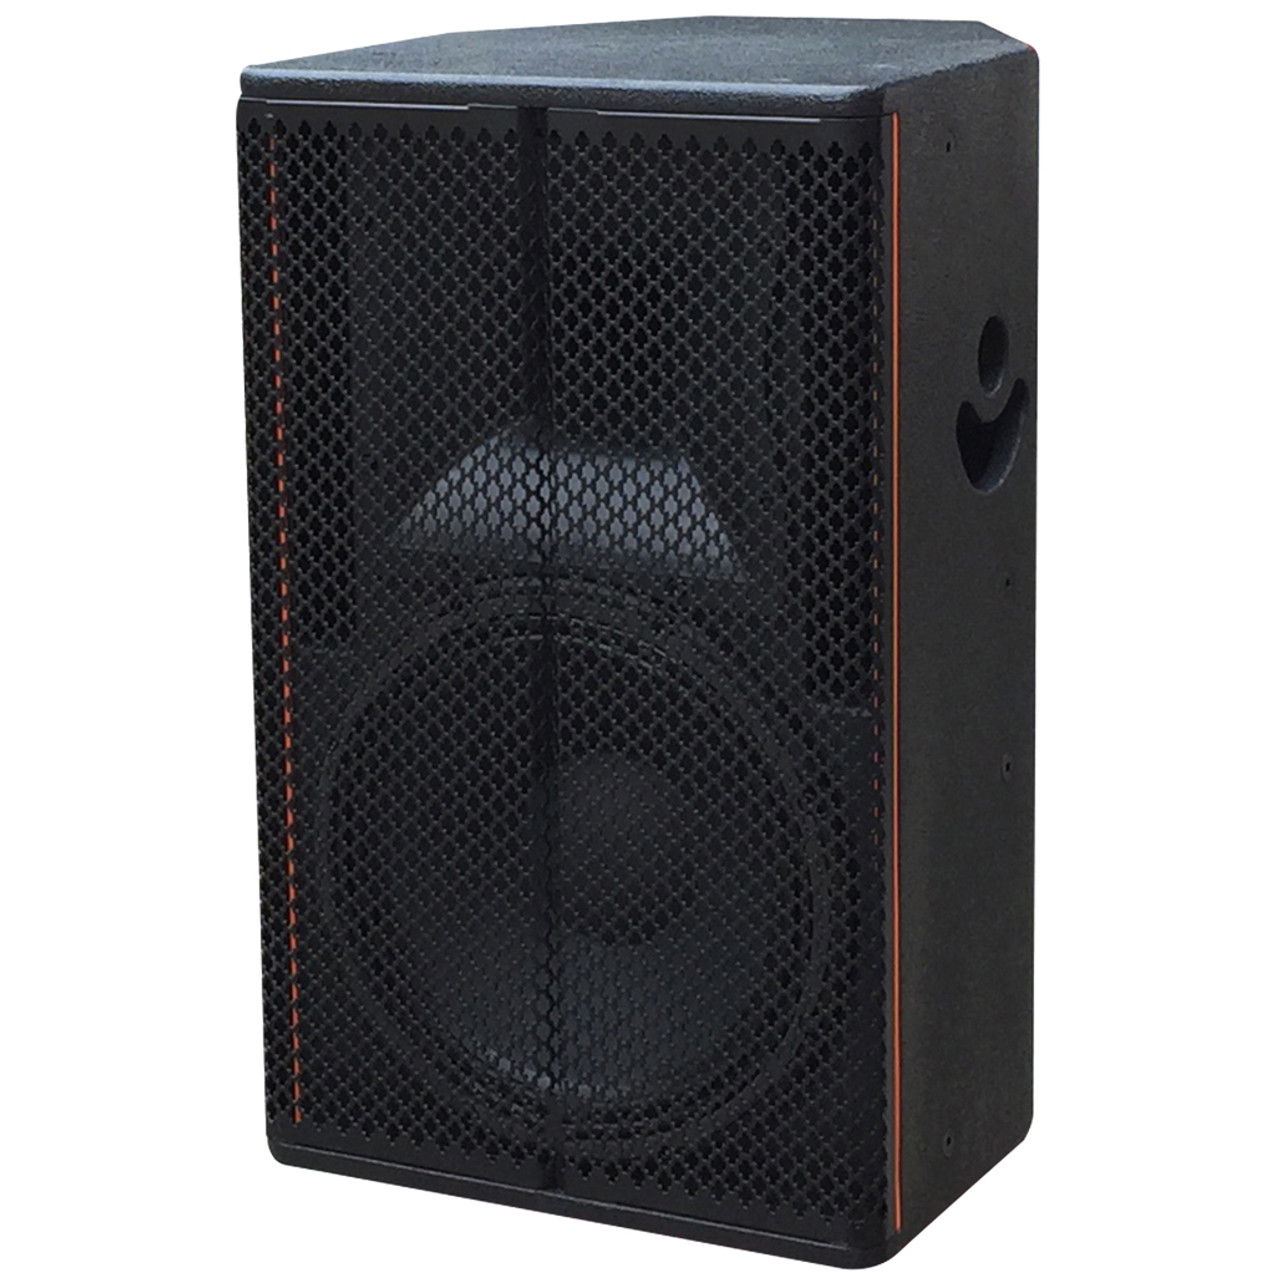 8 inch Two-Way Full Range Entertainment Speaker